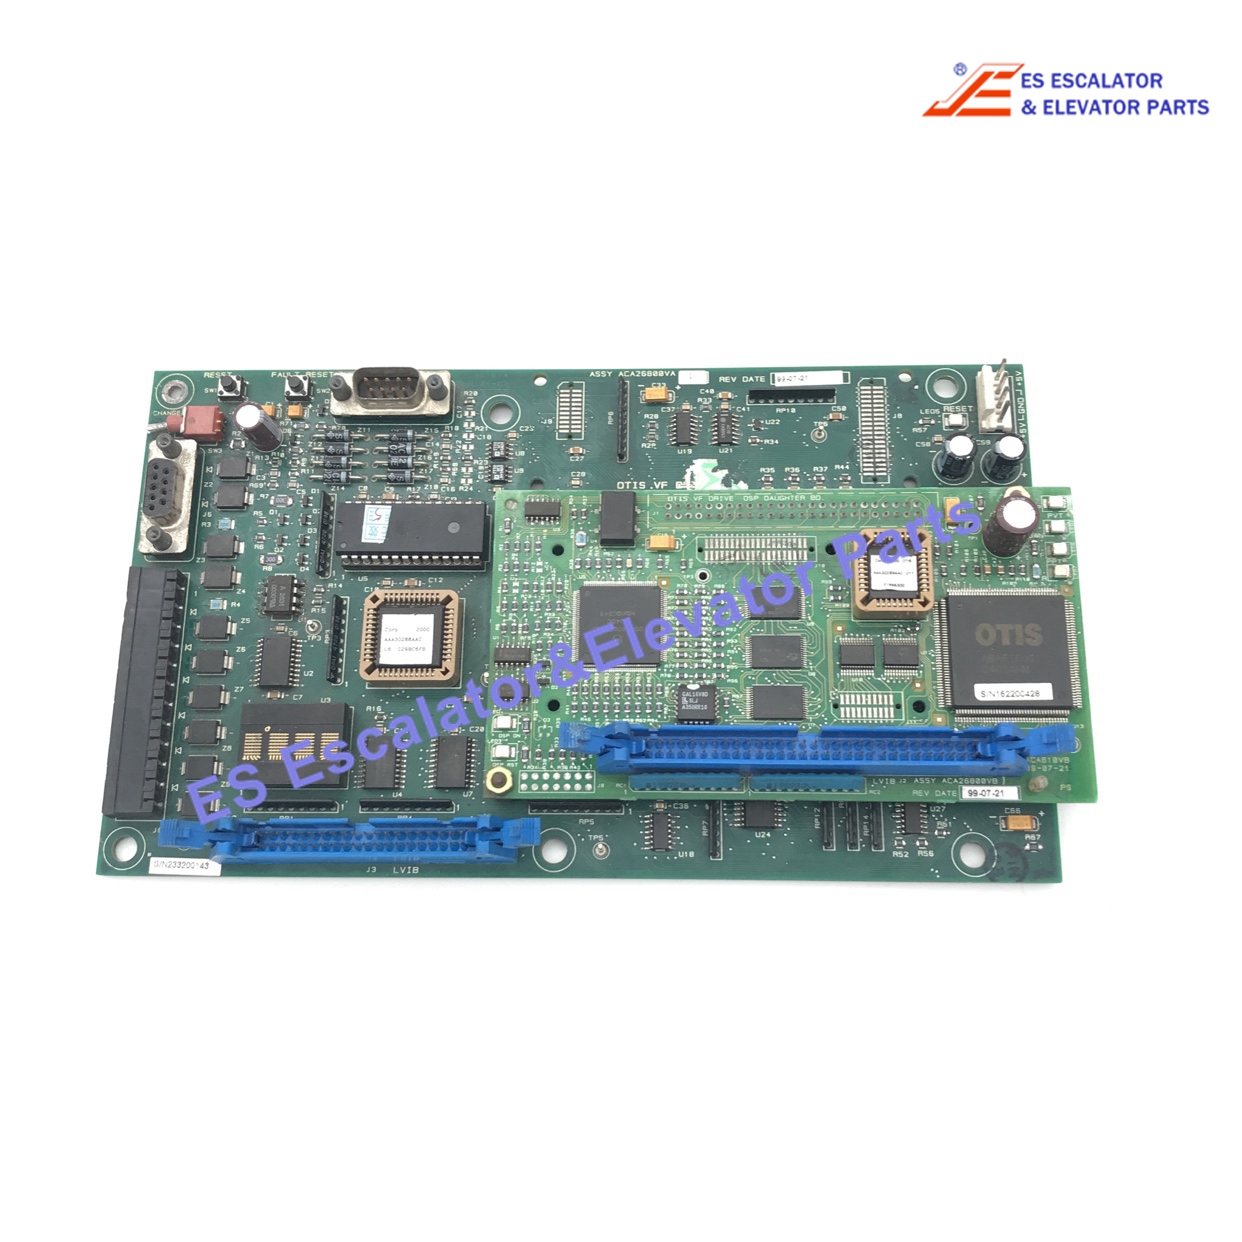 ADA26800VA1 Processor Board Use For Otis